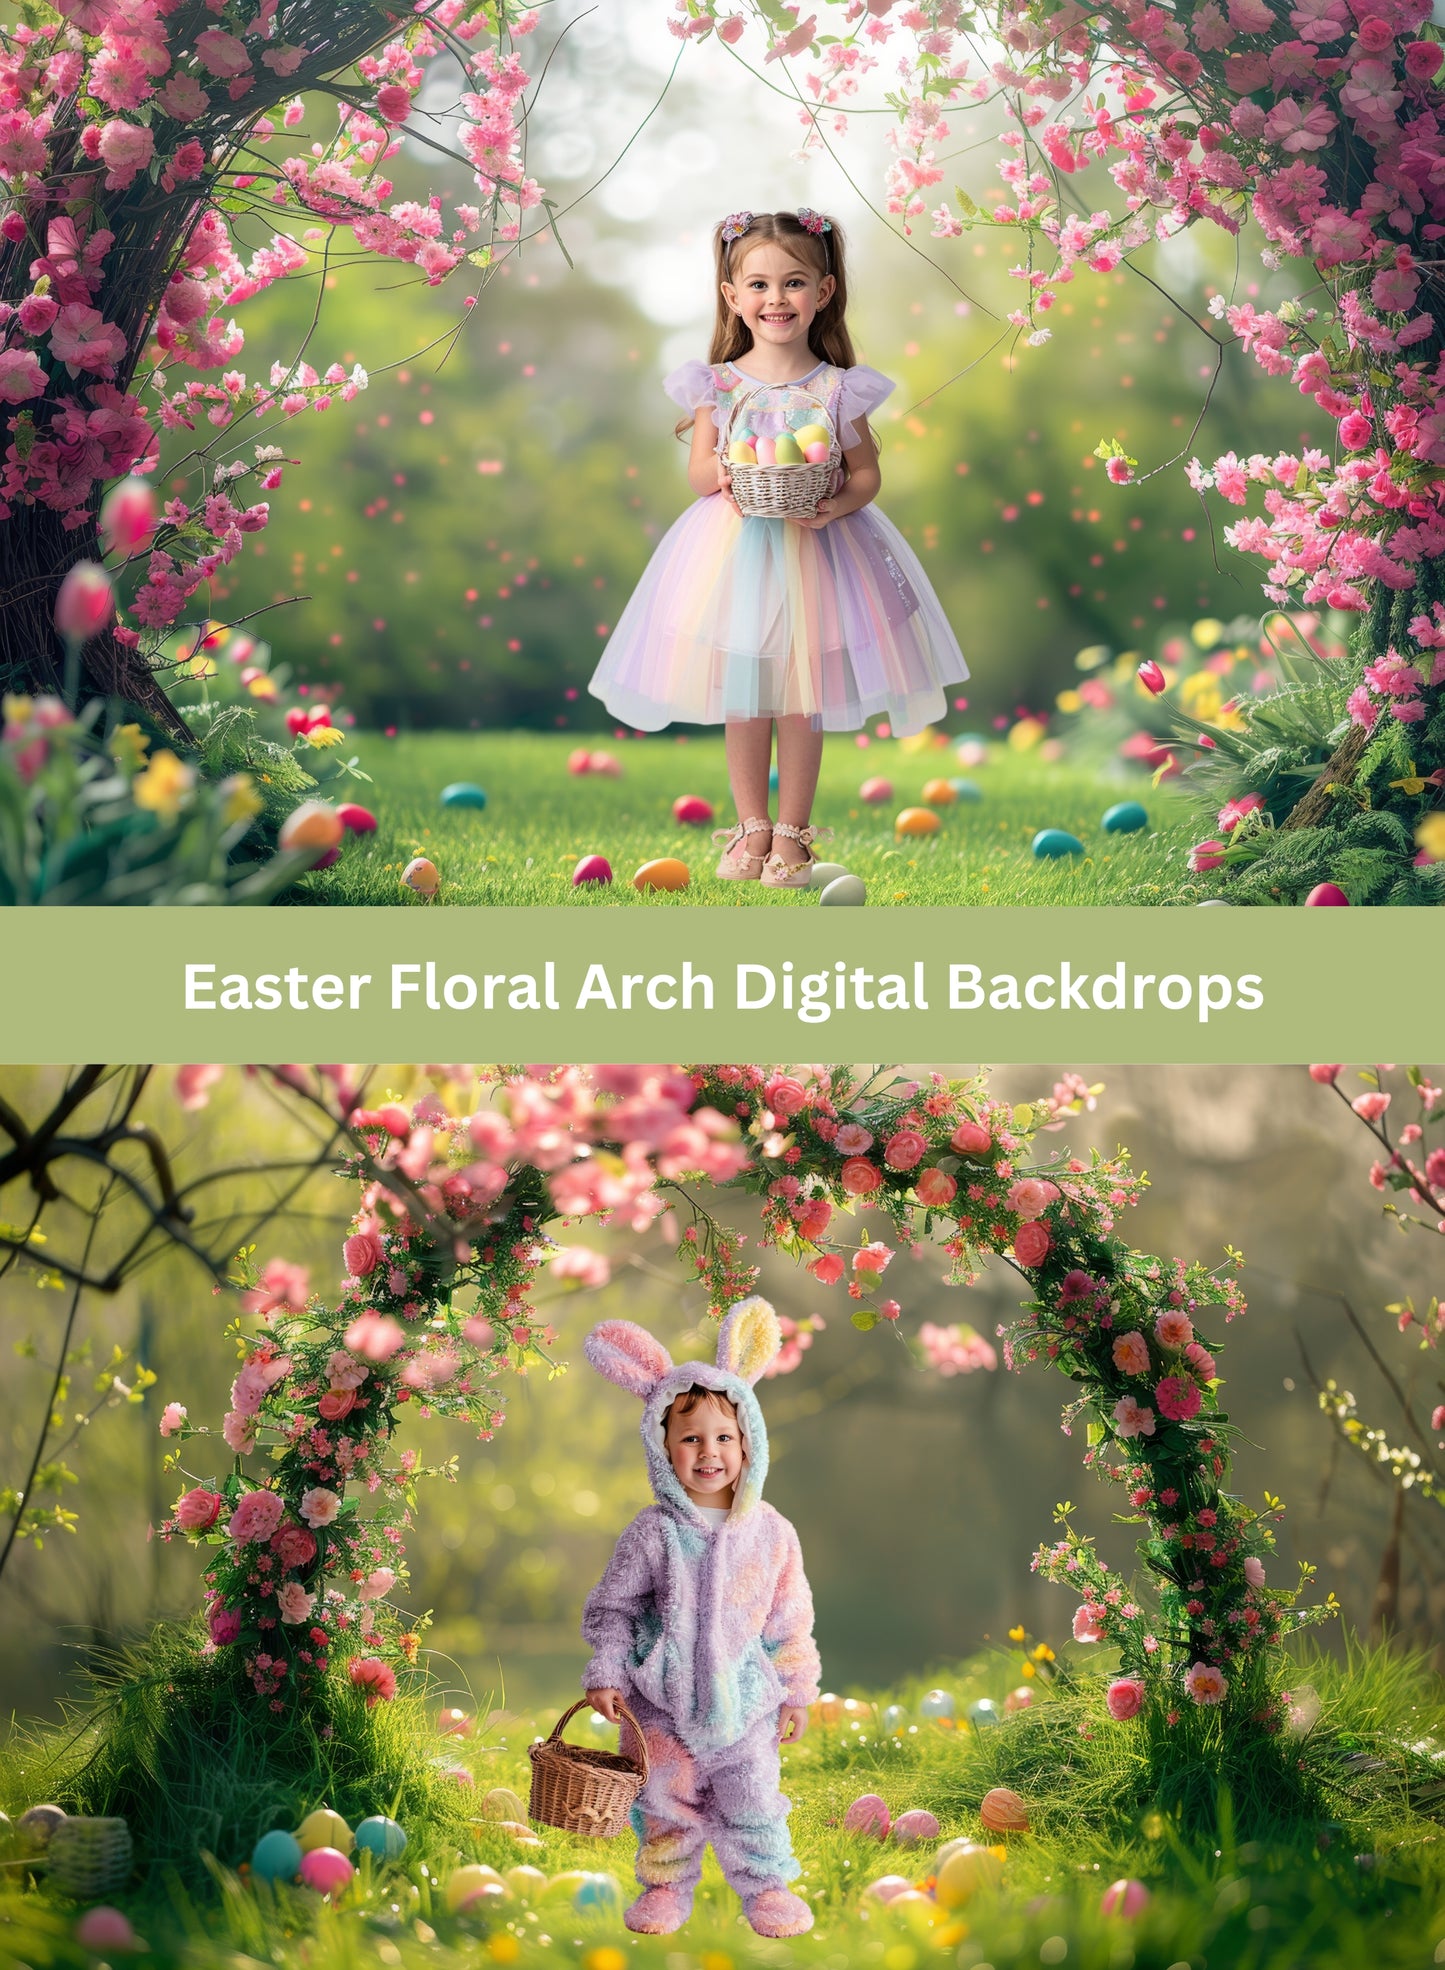 Easter Spring Floral Arch Digital Backdrops